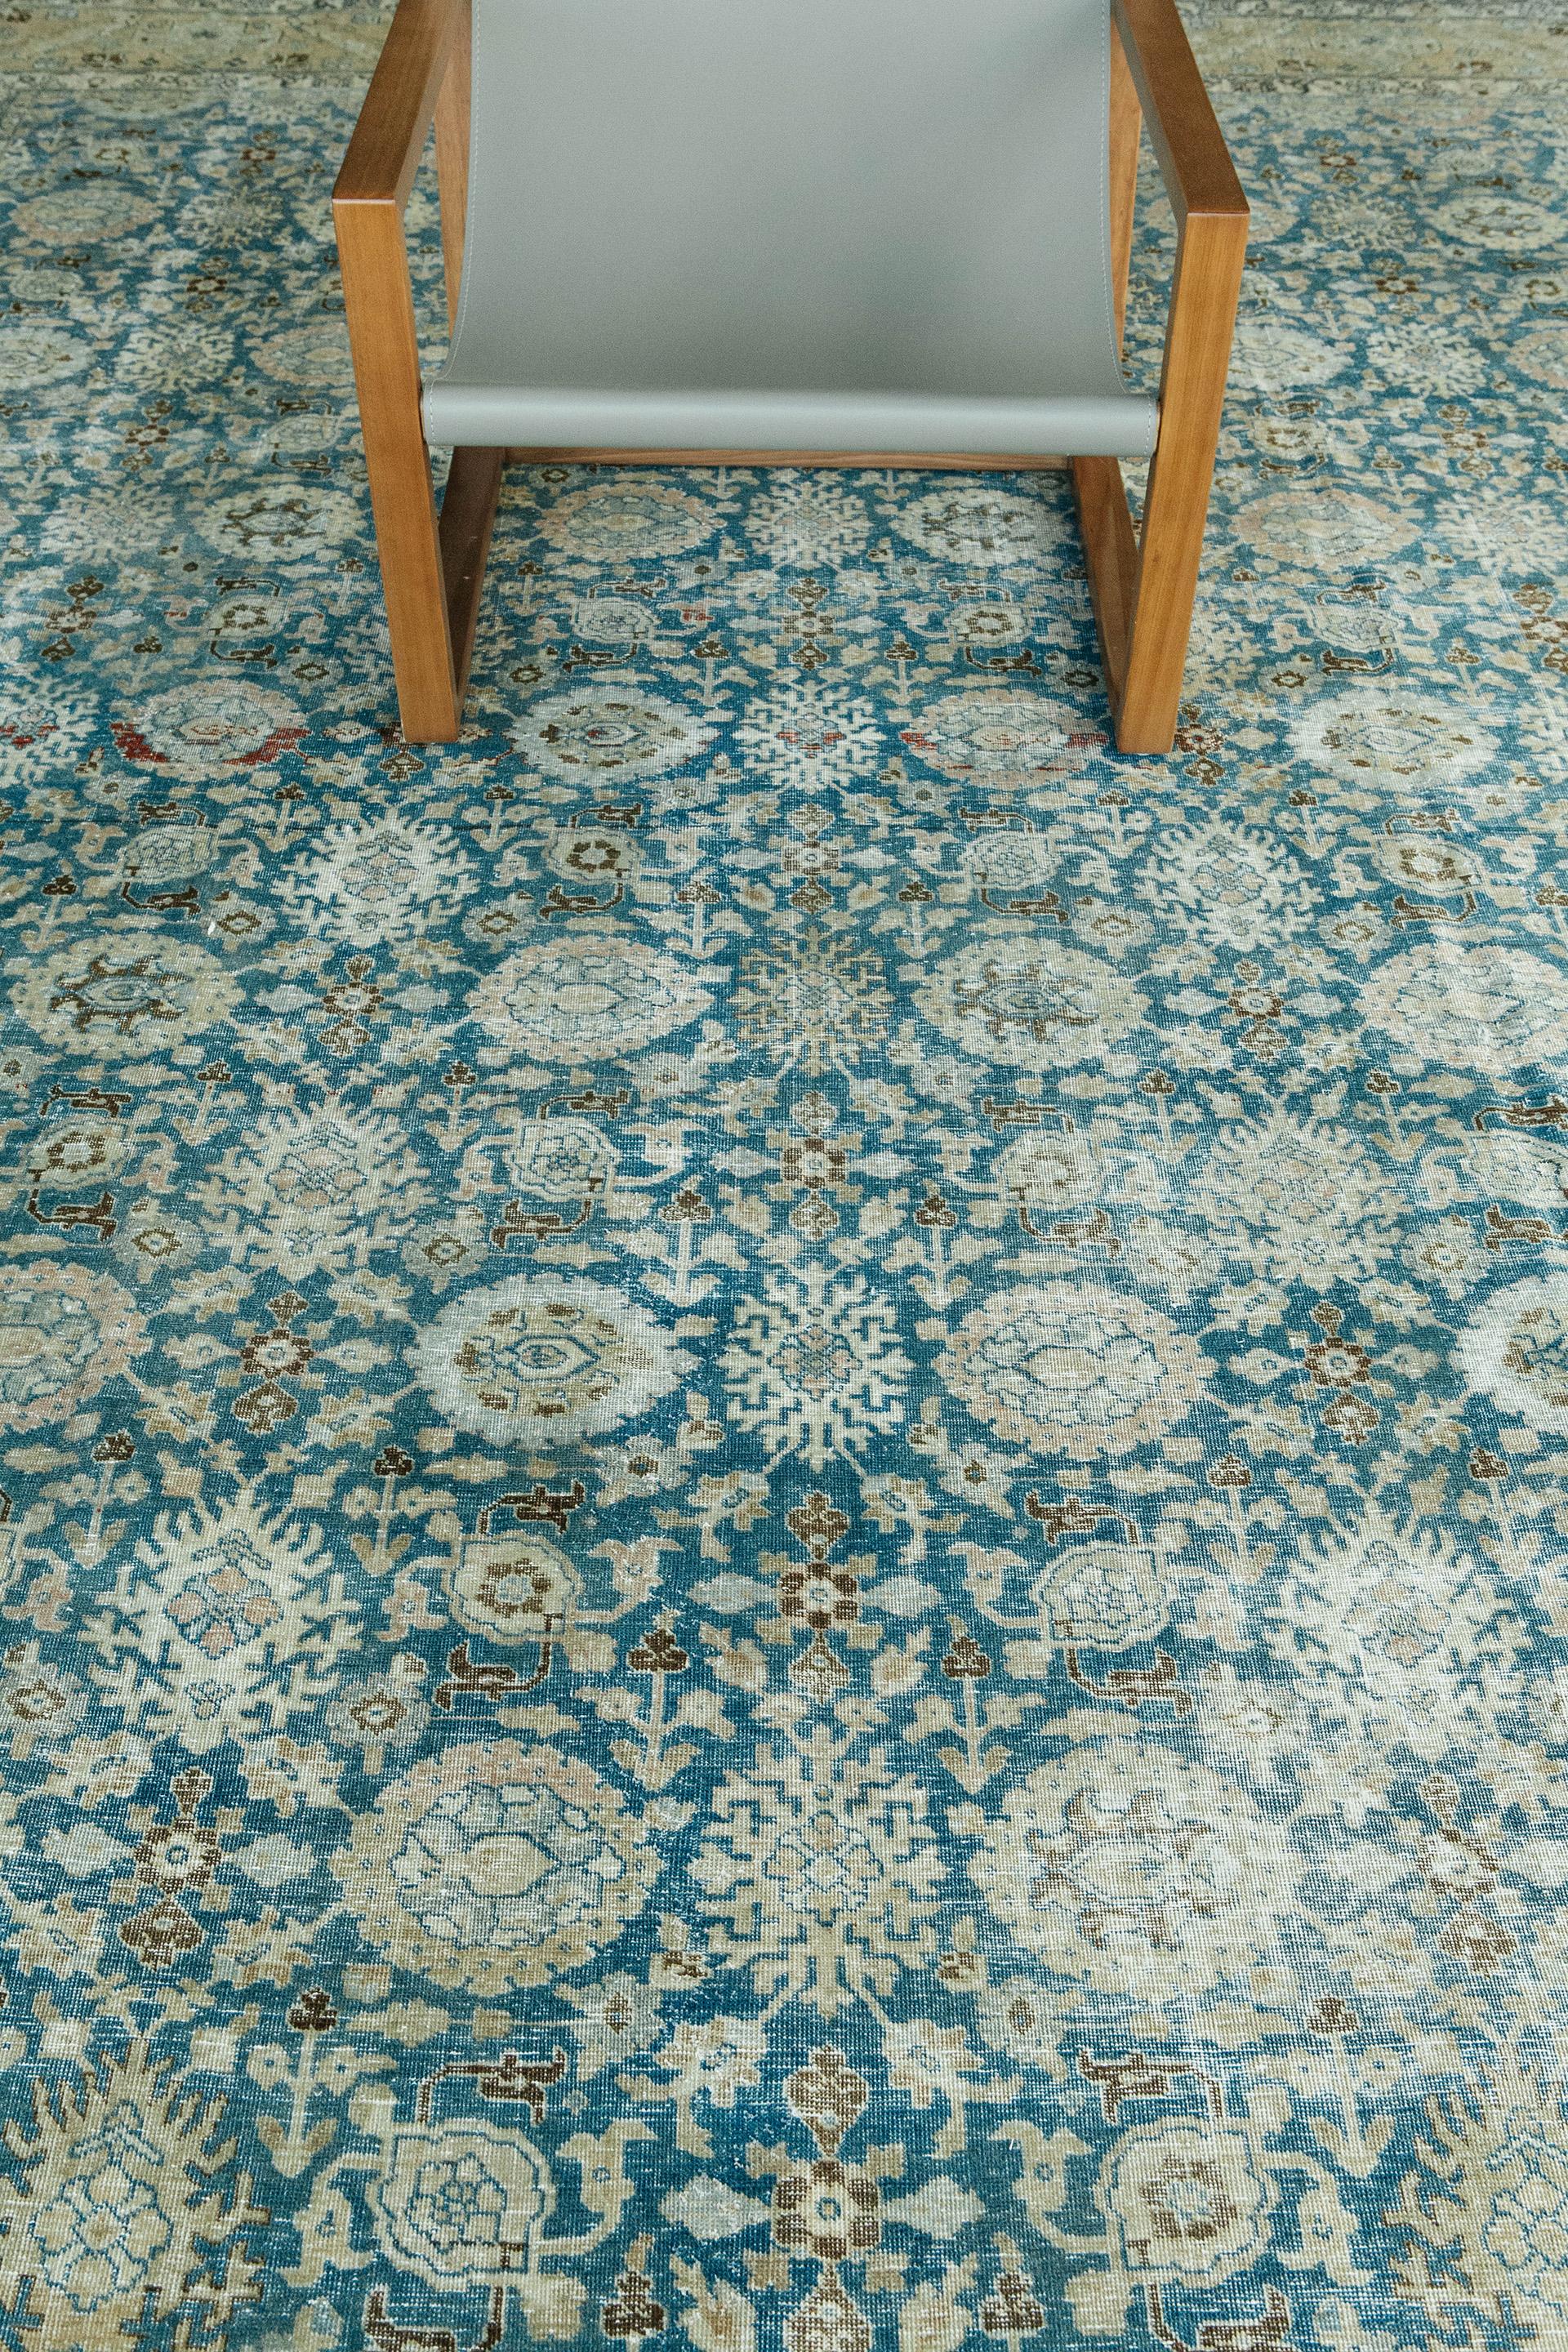 Mit strengen Standards für die handwerkliche Verarbeitung und die Qualität der verwendeten Materialien, fängt dieser Täbris-Teppich die Raffinesse und Raffinesse der klassischen Safawiden-Hofteppiche ein. Eine schöne Bordüre, die das juwelenfarbene